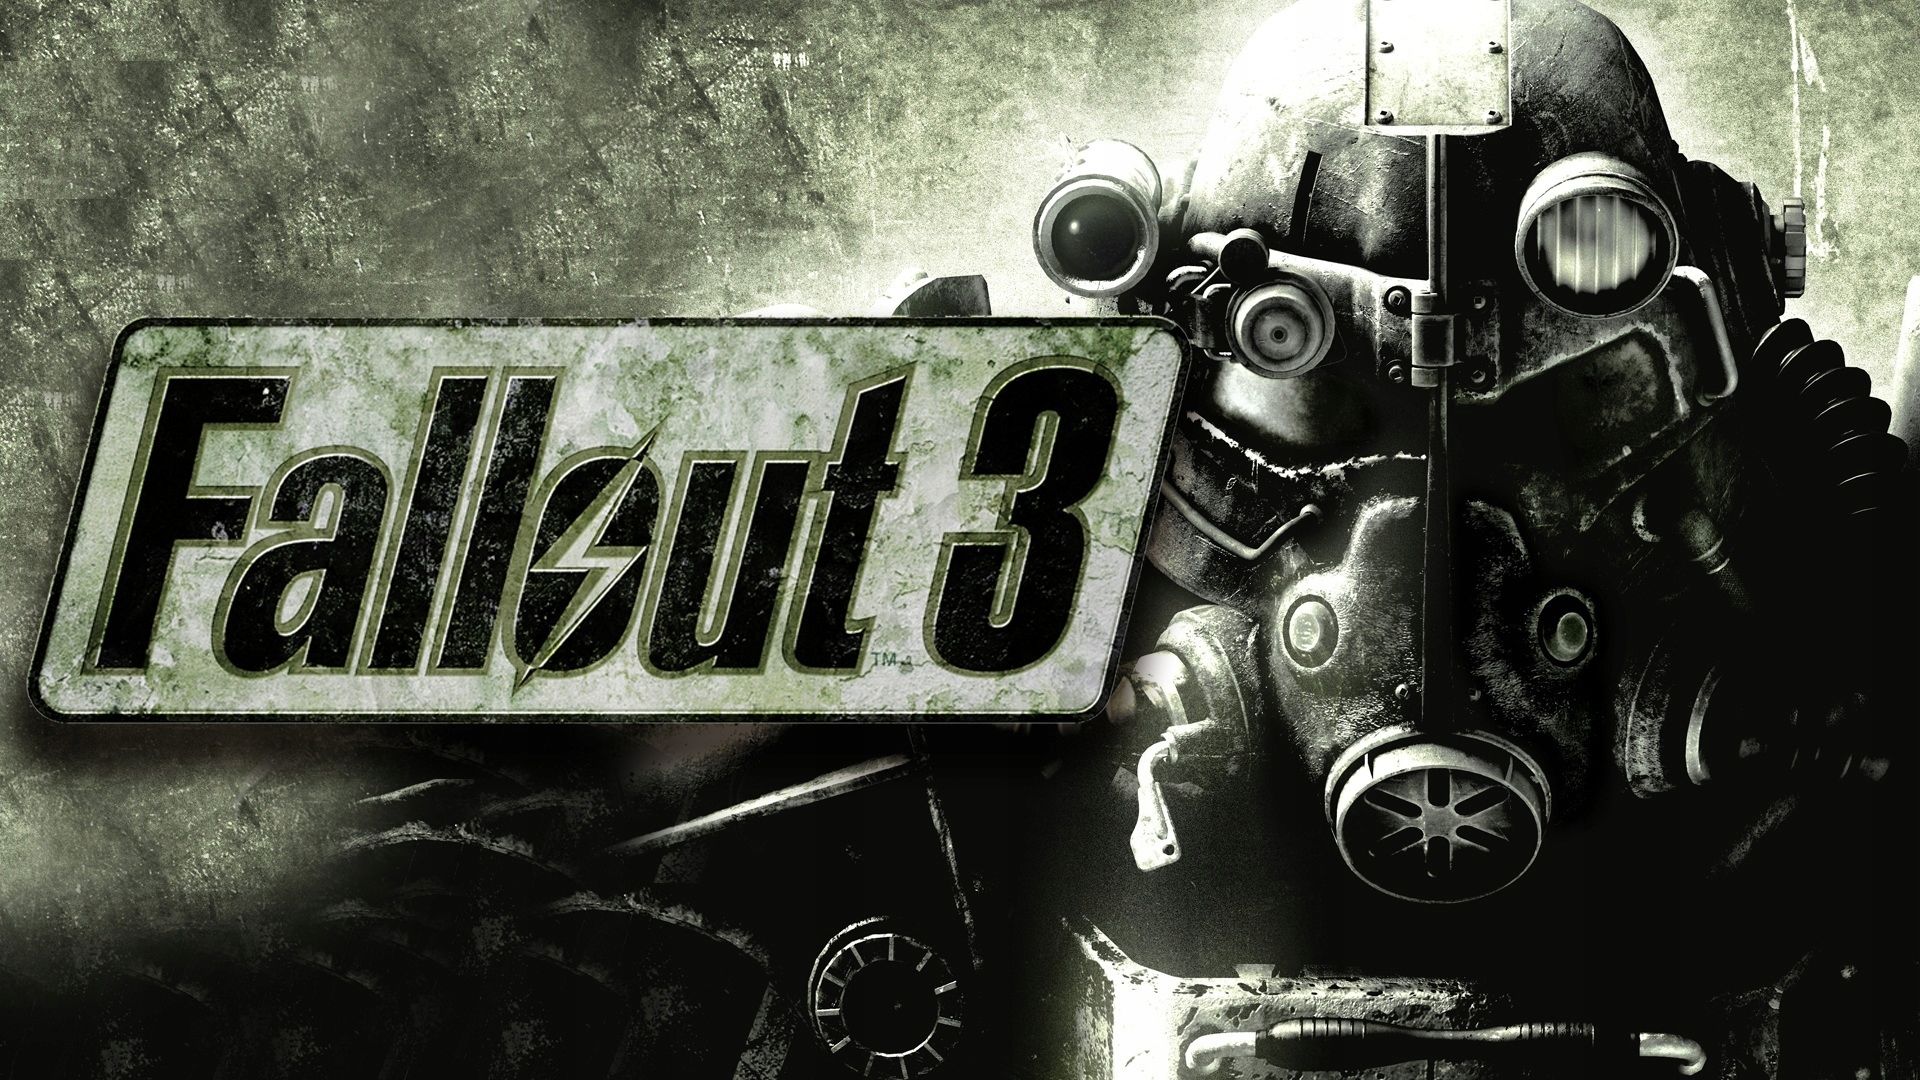 Читы для Fallout 3: коды на оружие, броню и патроны. Часть 1